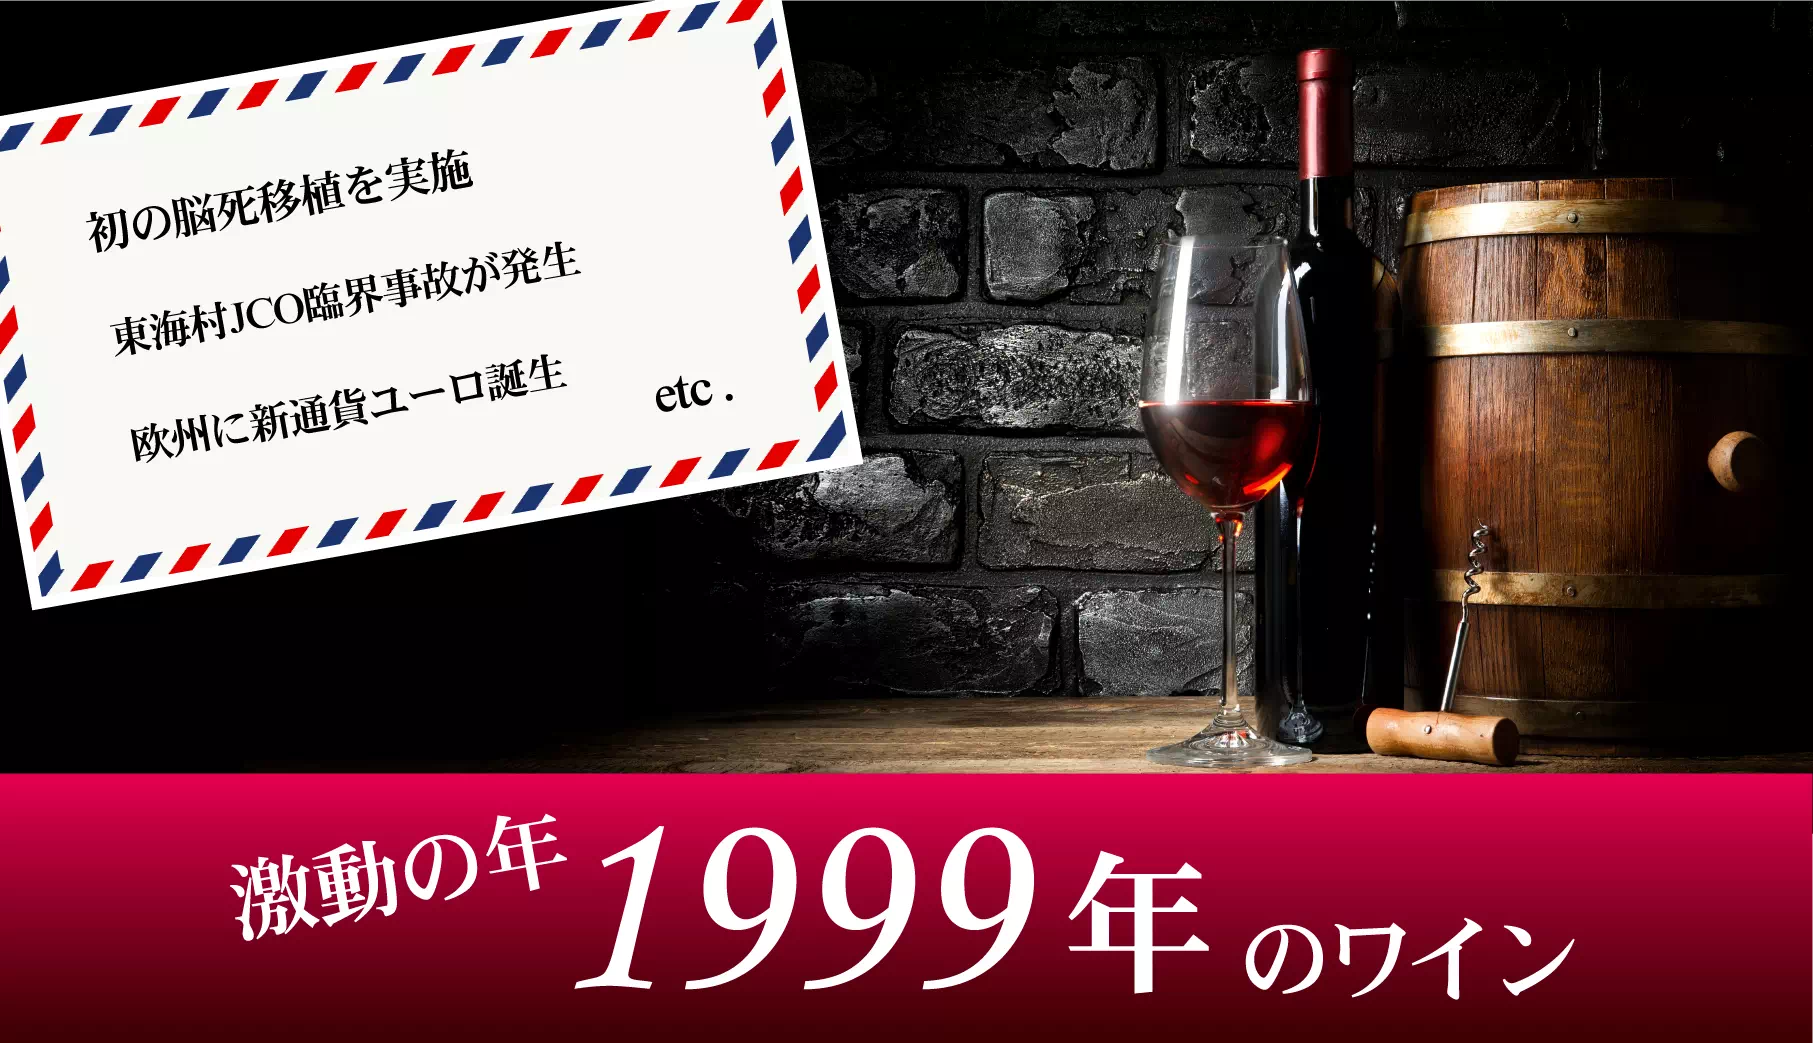 1999年(平成11年)のワイン